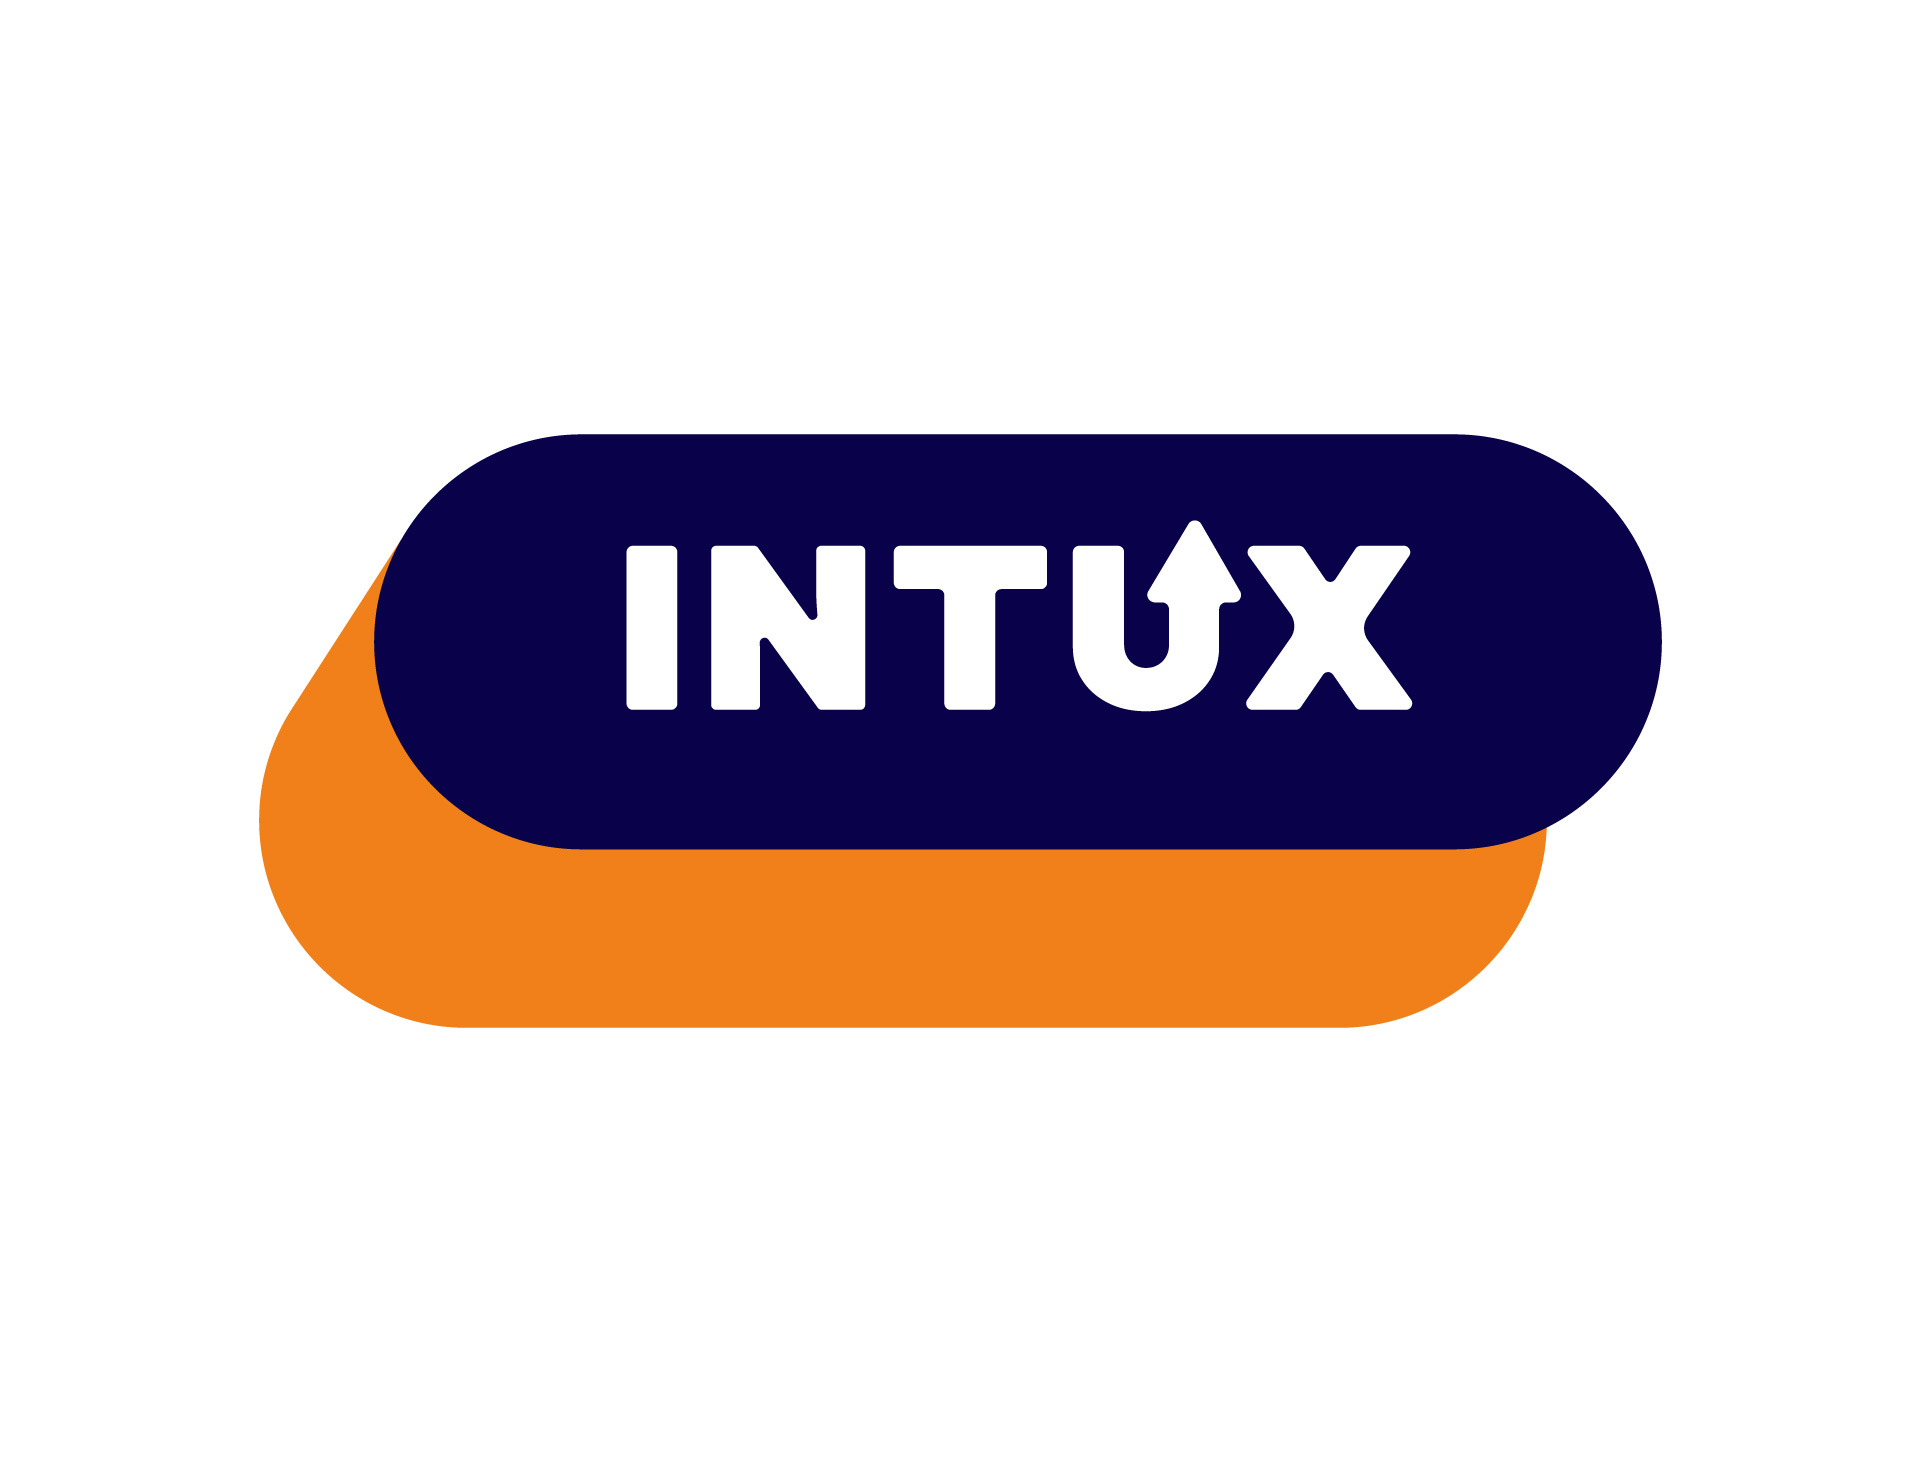 Intux logo